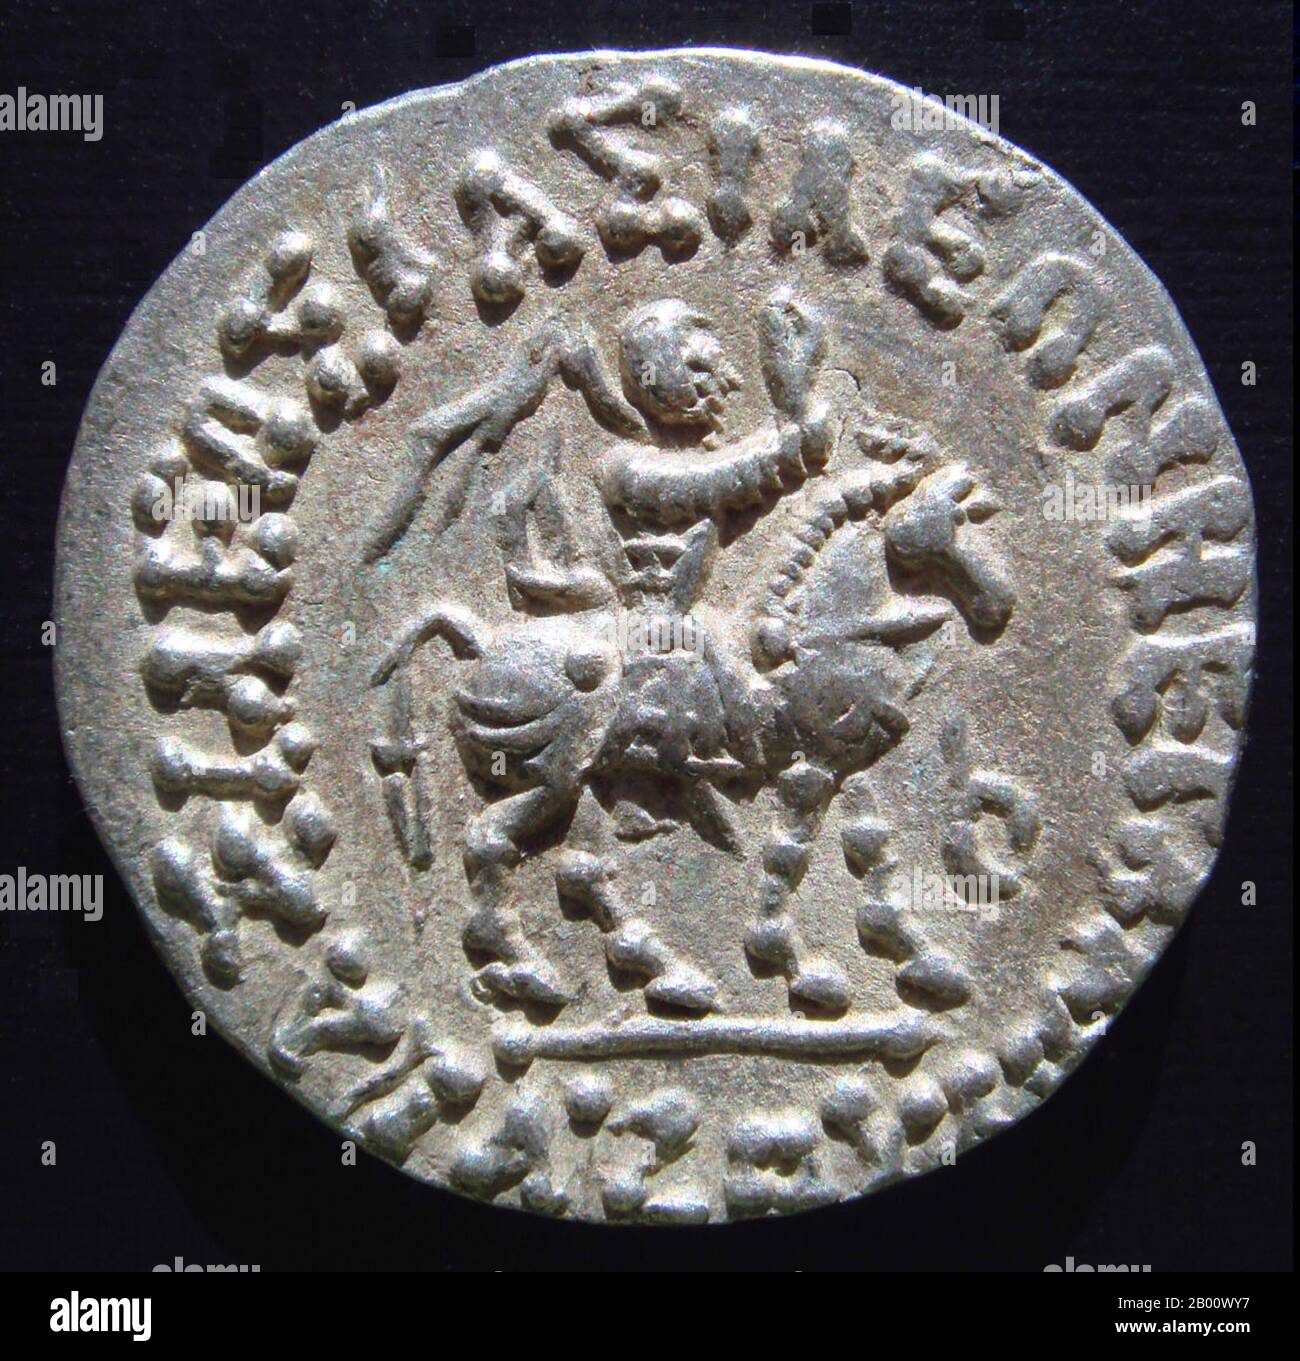 India: Azes II in armatura, a cavallo, su uno dei suoi tetradrachms d'argento, coniò a Gandhara. Ates II (regnato intorno al 35-12 a.C.), potrebbe essere stato l'ultimo re indocistiano dell'India settentrionale. Dopo la morte di Ates II, il dominio degli Indo-Sciti nell'India nordoccidentale si sgretolò con la conquista dei Kushan, una delle cinque tribù degli Yuezhi che avevano vissuto a Bactria per più di un secolo, E che poi si stava espandendo in India per creare un Impero Kushan. Foto Stock